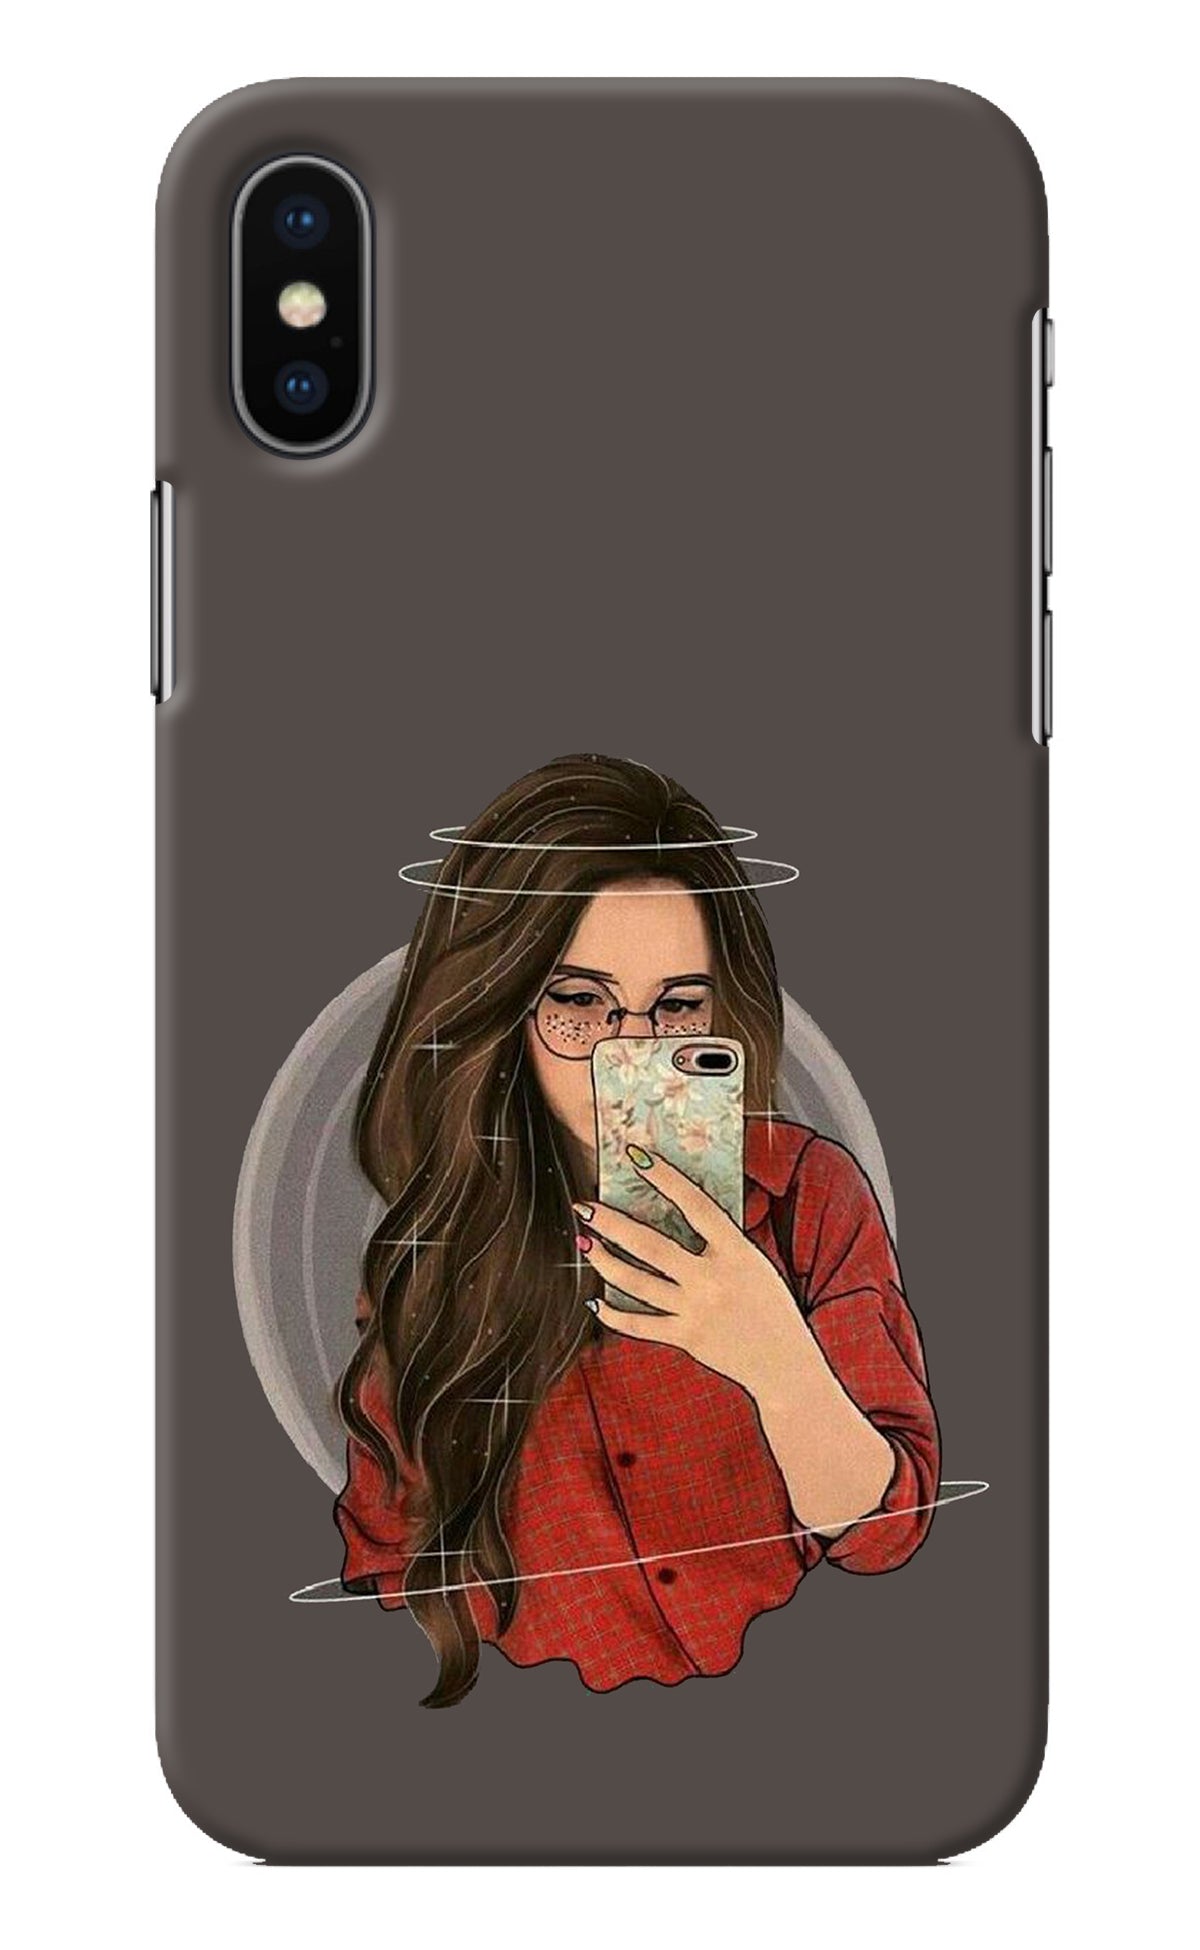 Selfie Queen iPhone XS Back Cover